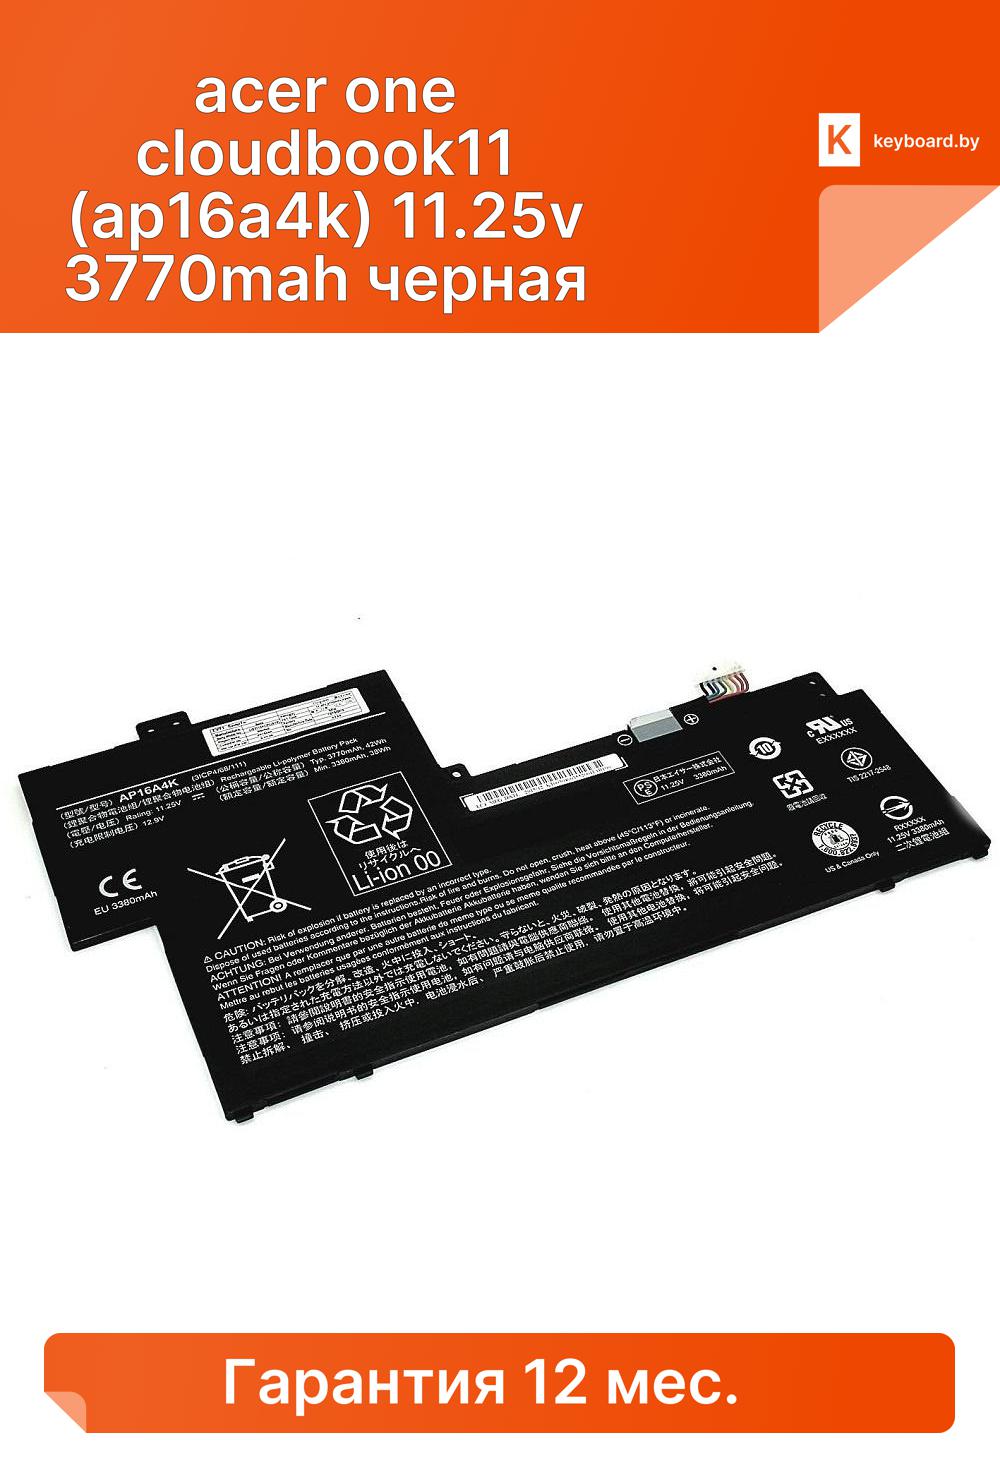 Аккумуляторная батарея для ноутбука acer one cloudbook11 (ap16a4k) 11.25v 3770mah черная